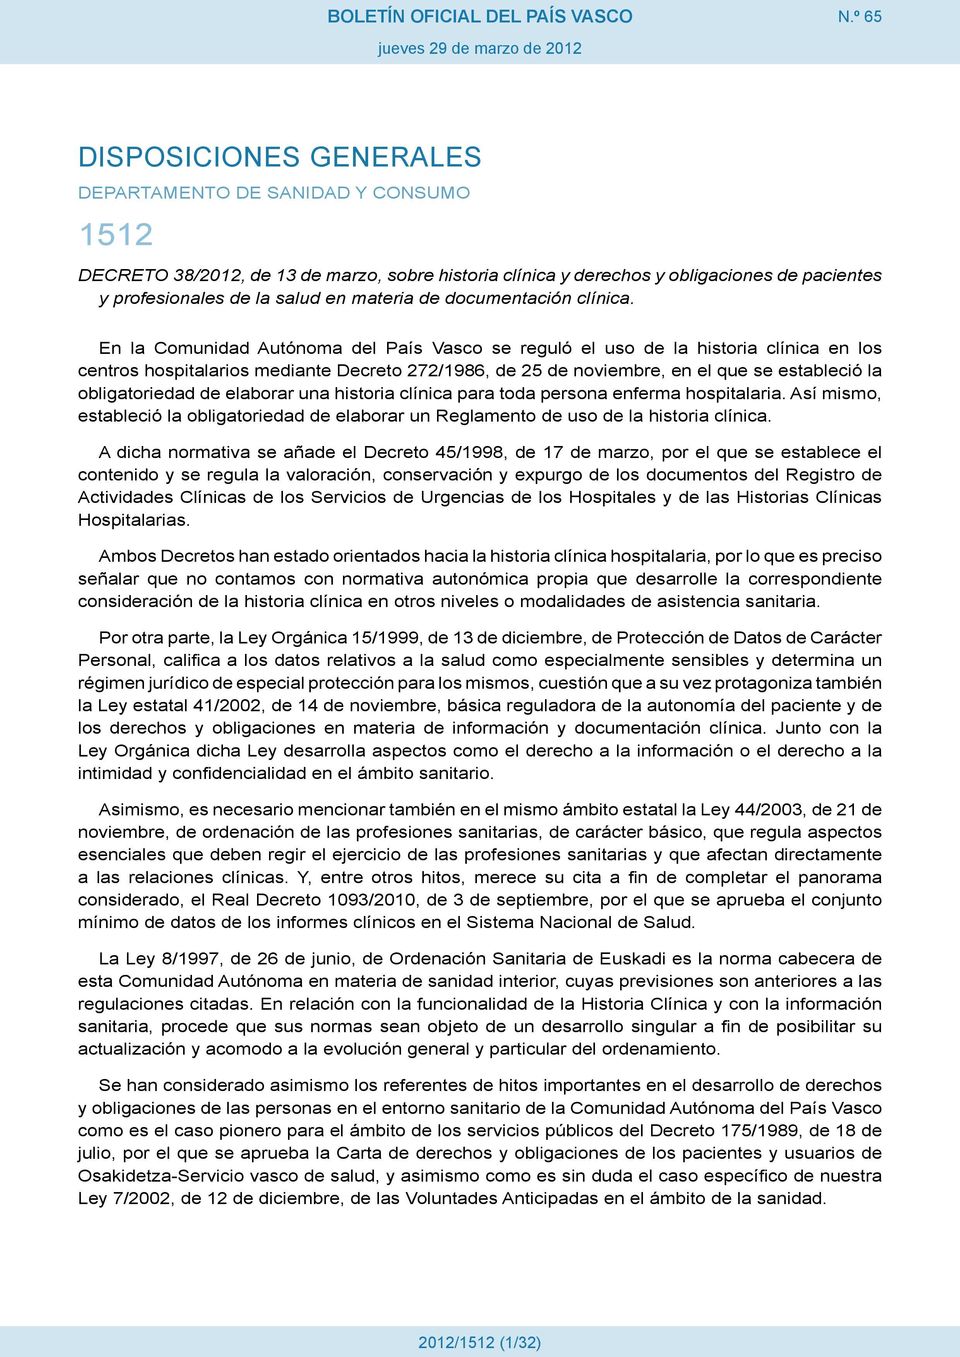 En la Comunidad Autónoma del País Vasco se reguló el uso de la historia clínica en los centros hospitalarios mediante Decreto 272/1986, de 25 de noviembre, en el que se estableció la obligatoriedad